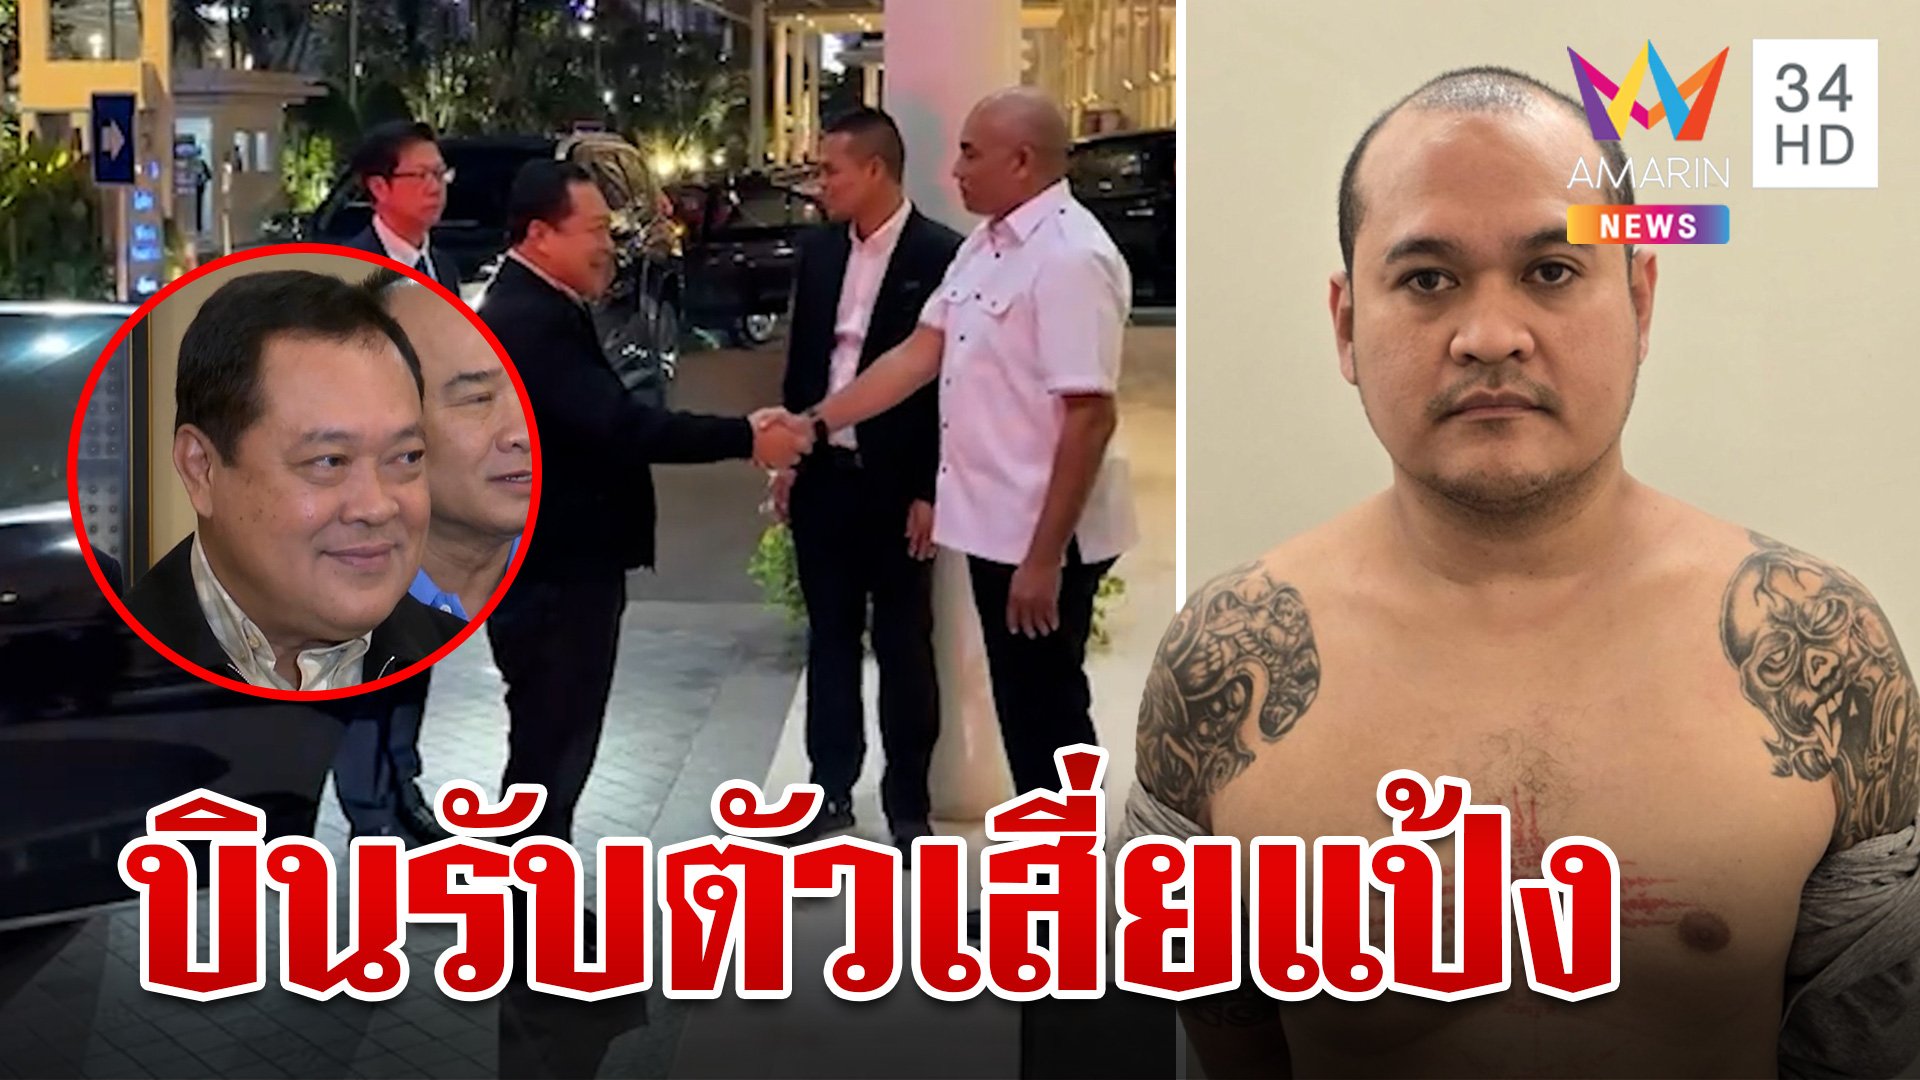 เปิดแผนพา "แป้ง นาโหนด" กลับไทย พี่ชายห่วงเรื่องความปลอดภัย | ทุบโต๊ะข่าว | 1 มิ.ย. 67 | AMARIN TVHD34